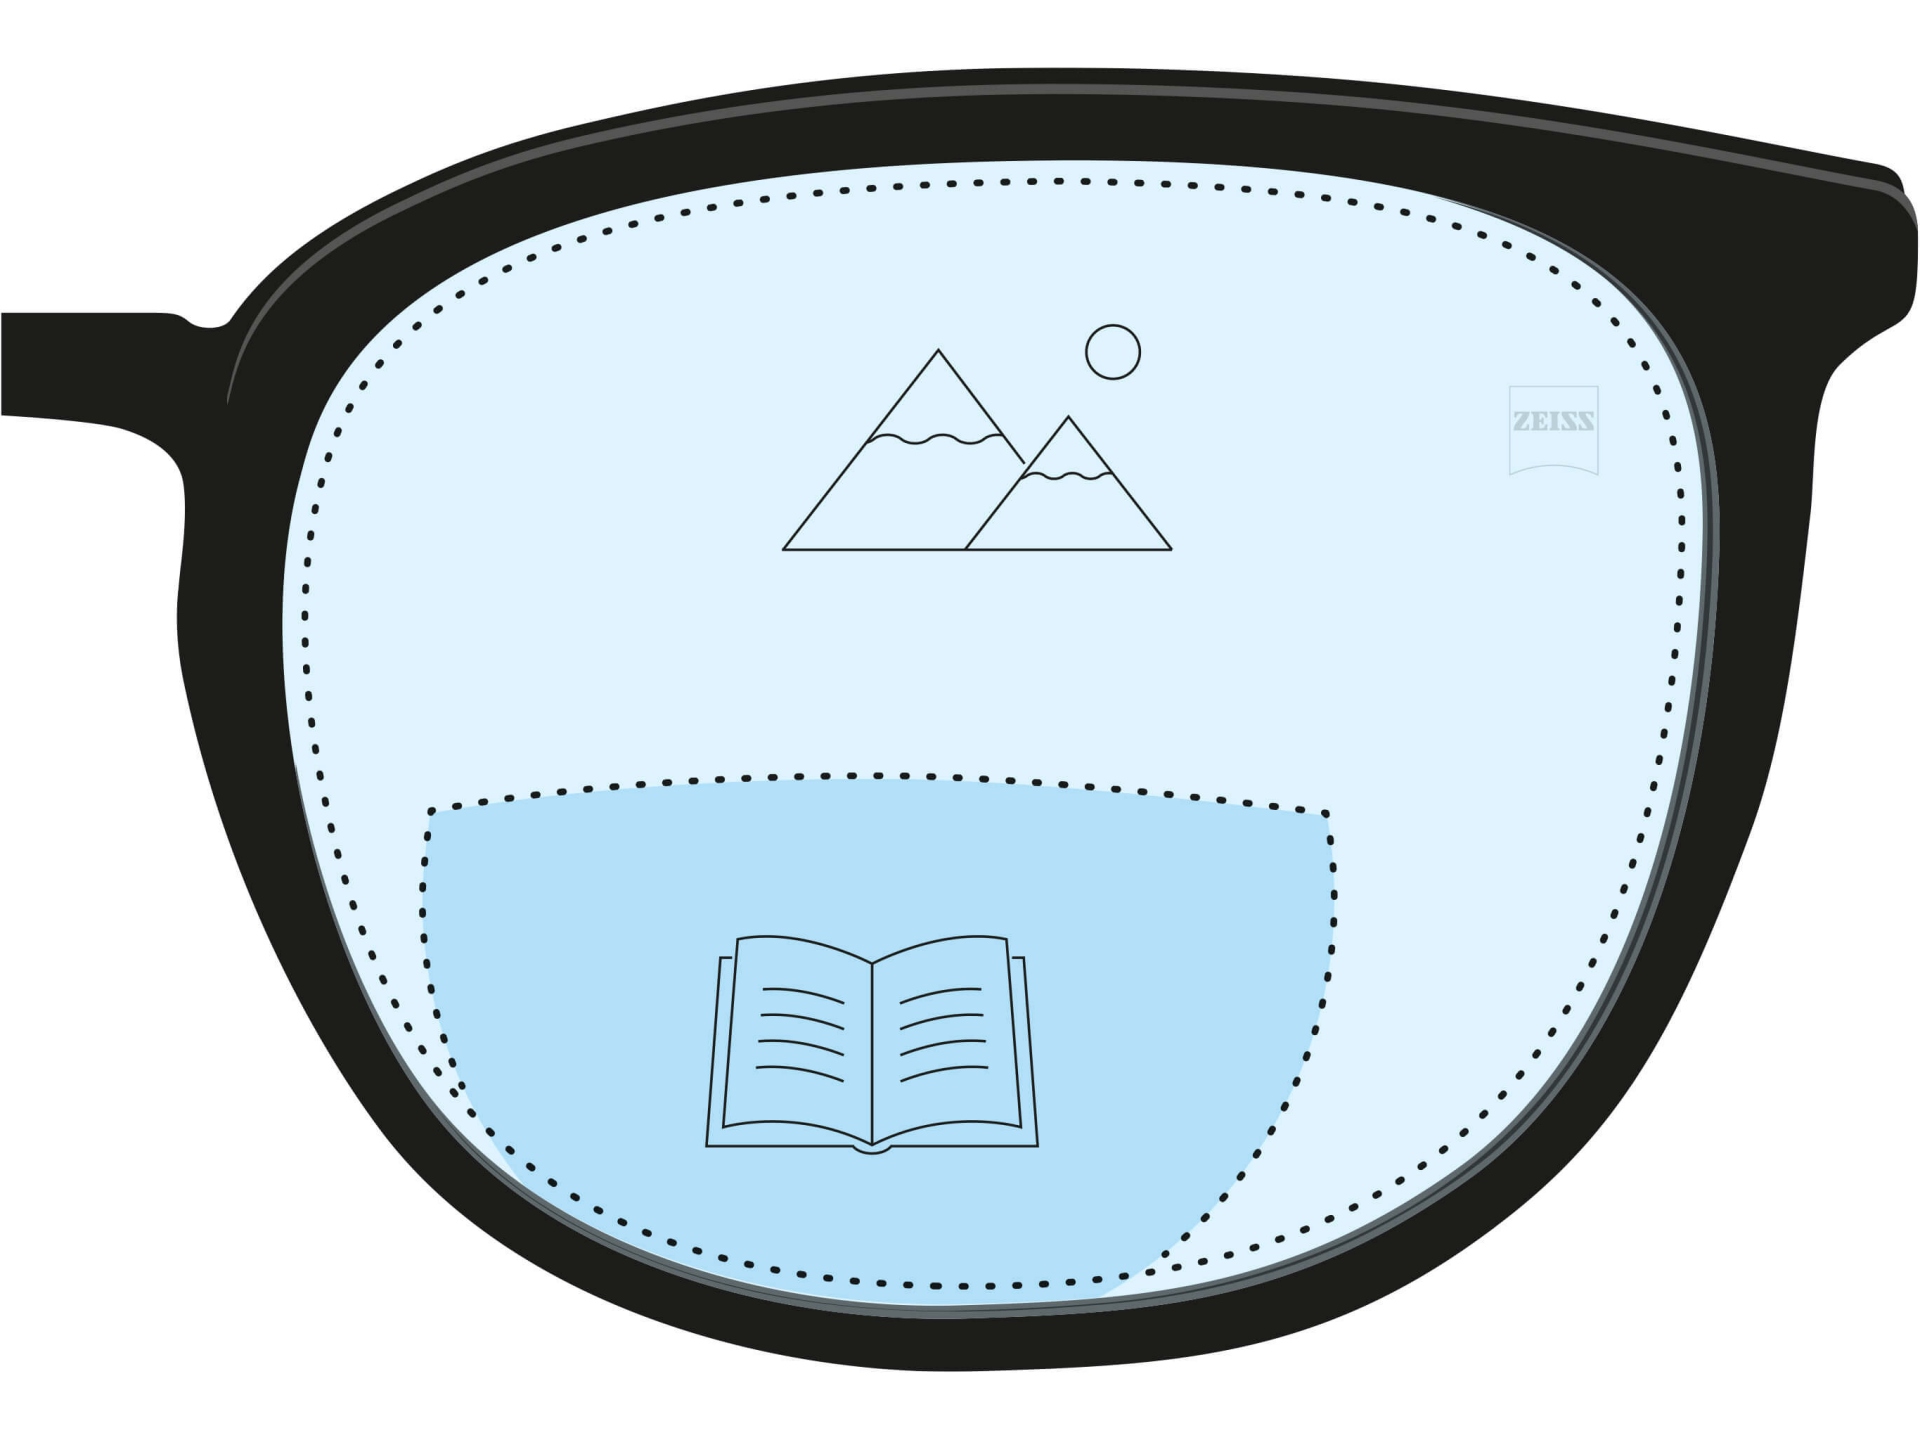 Abbildung eines Bifokalglases. Der dunkelblaue Bereich stellt die Lesezone dar und der hellblaue Bereich des Brillenglases zeigt die Fernsichtzone.